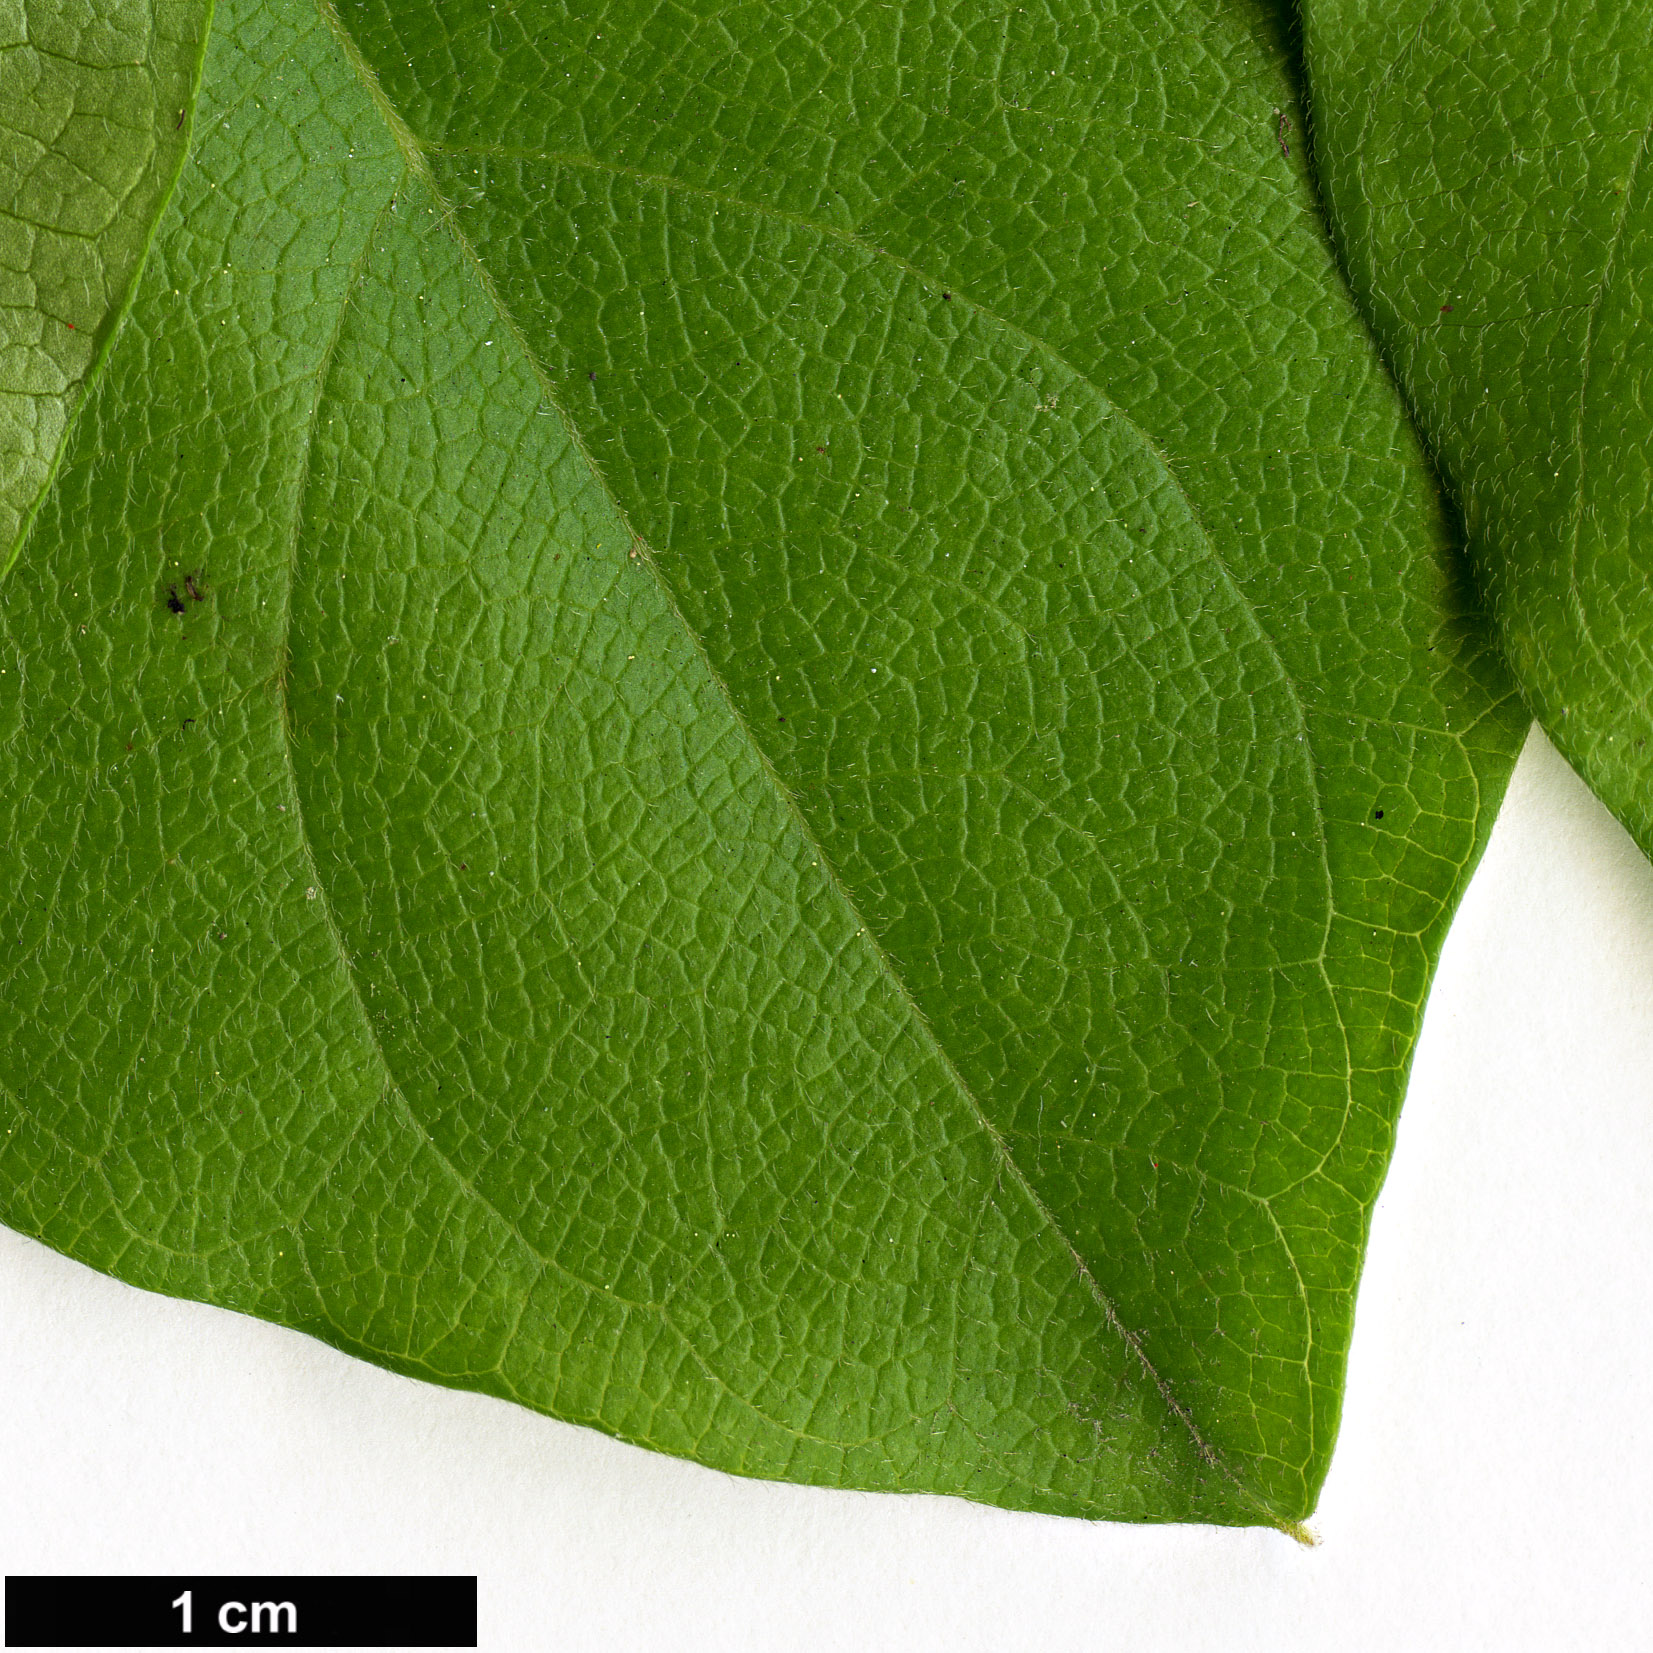 High resolution image: Family: Menispermaceae - Genus: Cocculus - Taxon: orbiculatus